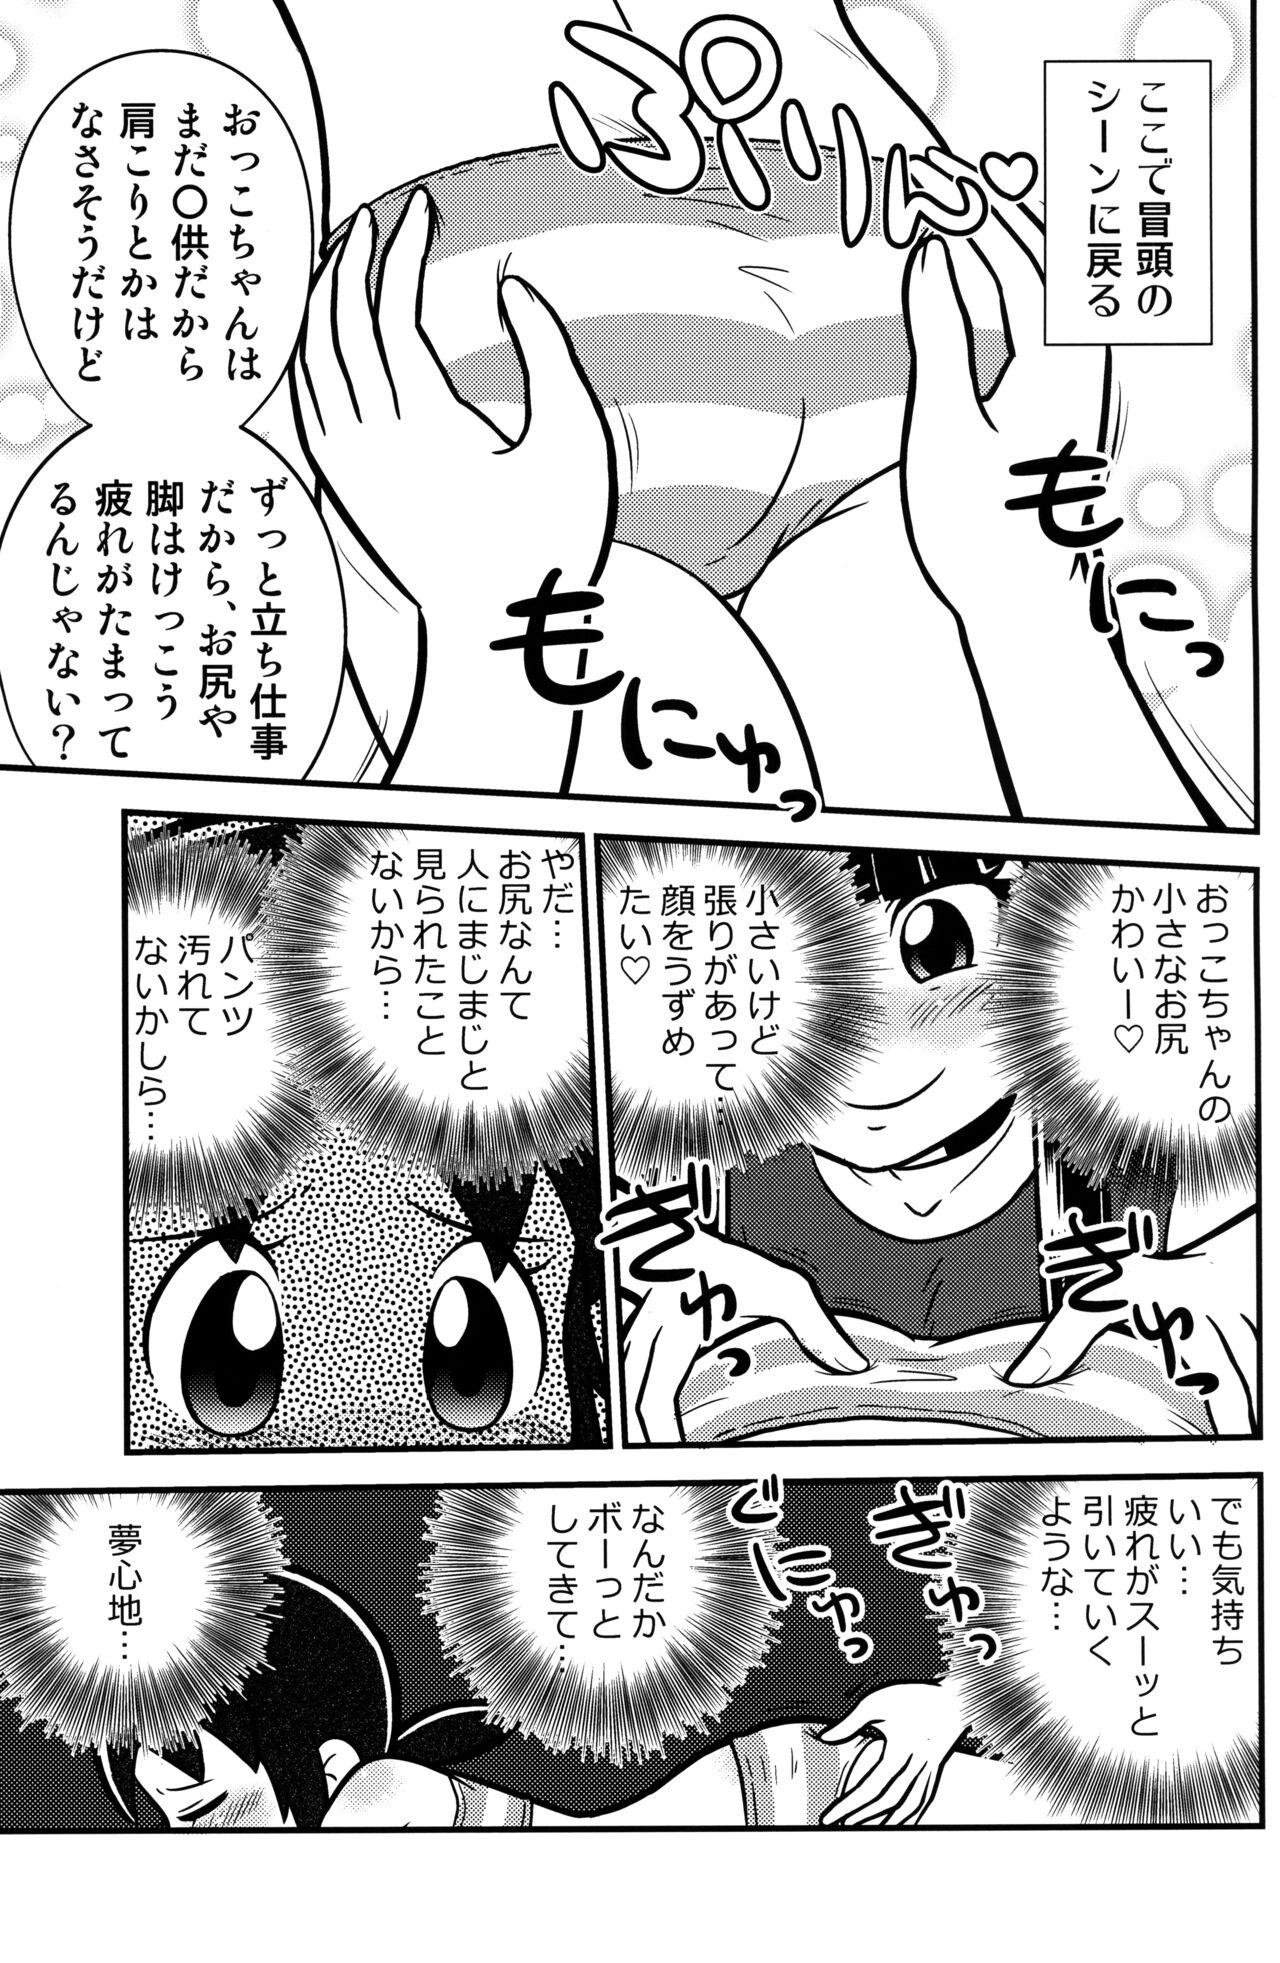 Gostoso Senkakubanrai! 2 - Waka okami wa shougakusei Wife - Page 7